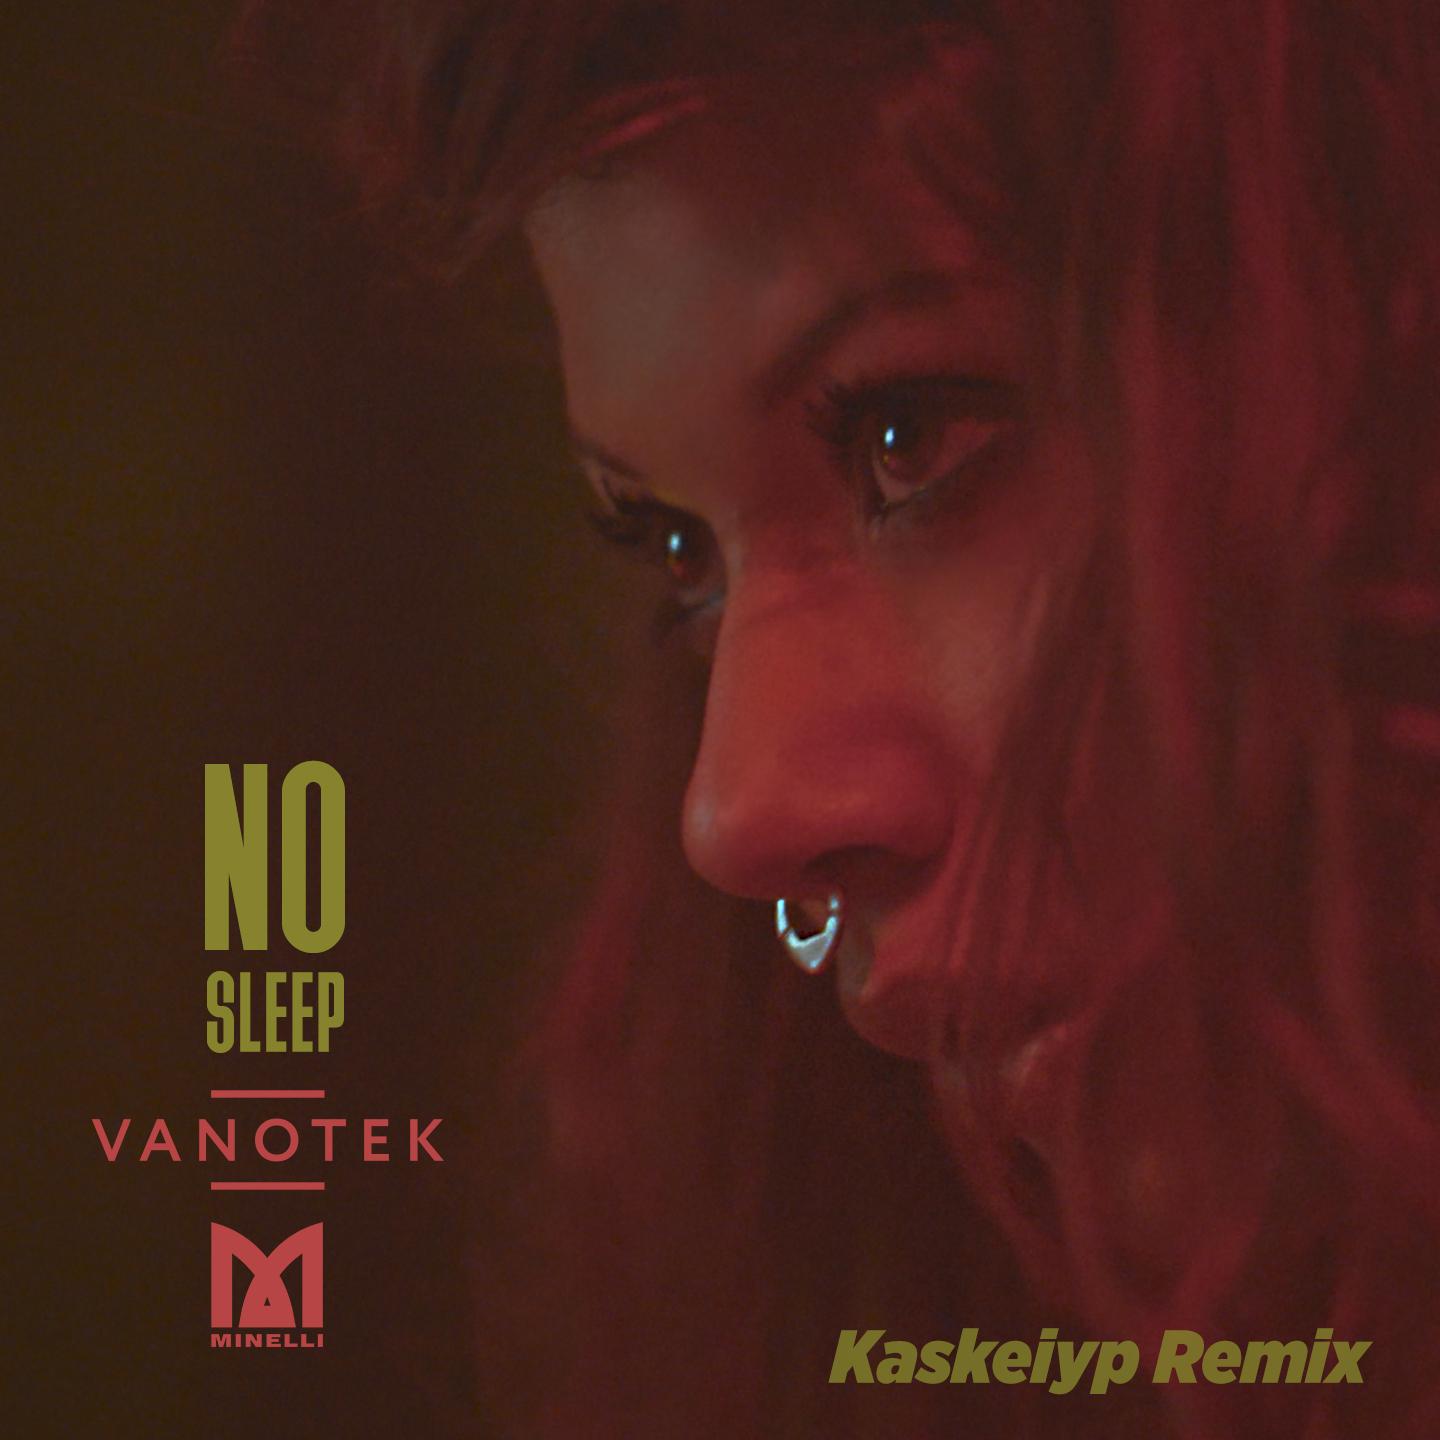 Vanotek - No Sleep (Kaskeiyp Remix)